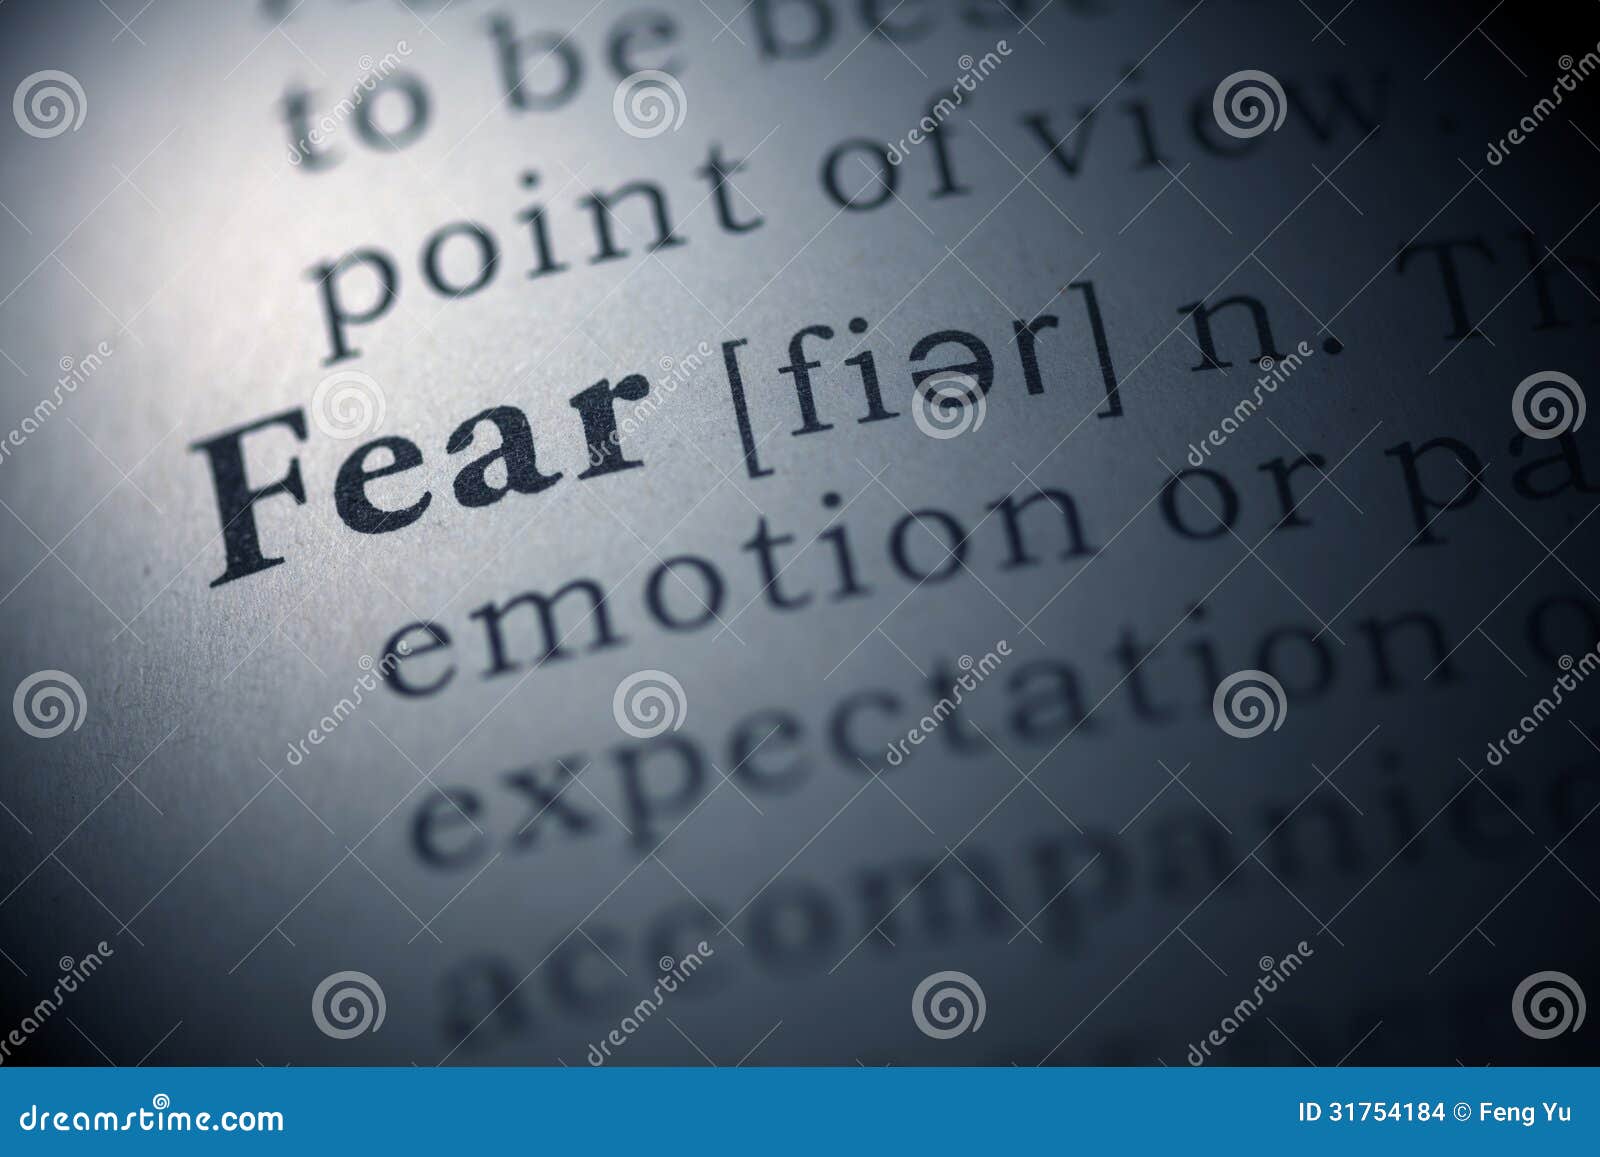 Definition essay on fear